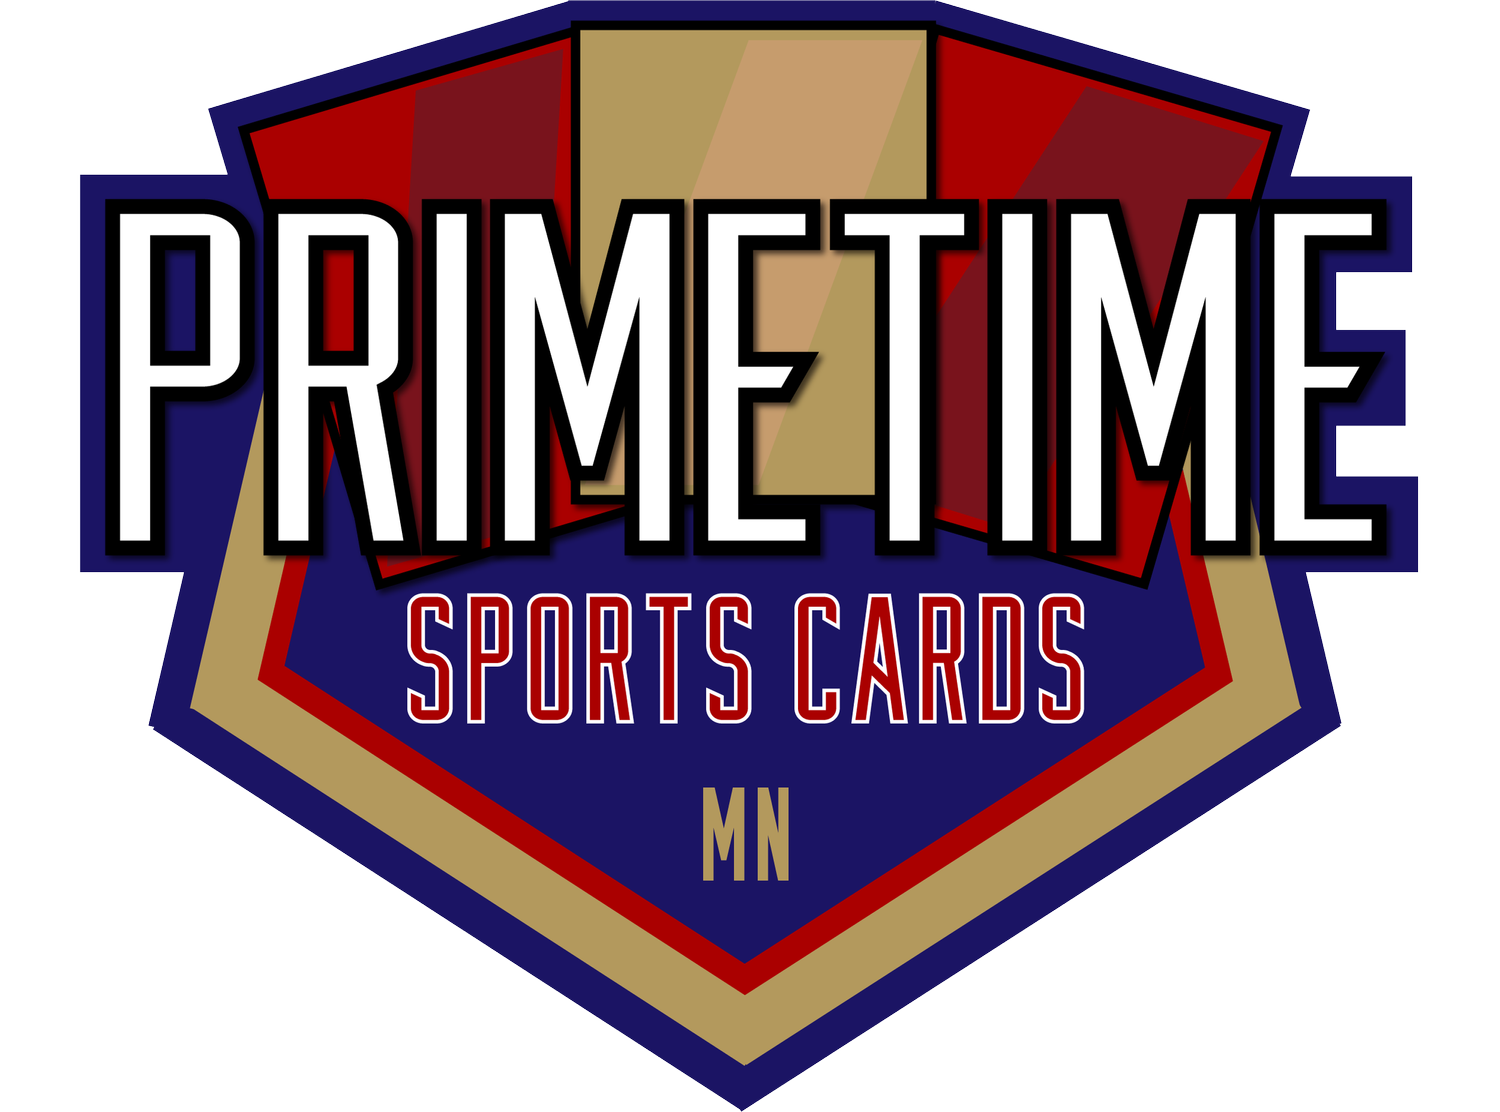 Primetime Sports Cards